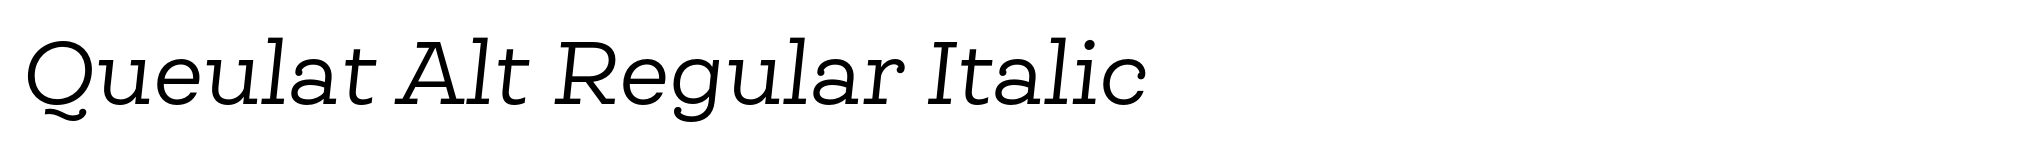 Queulat Alt Regular Italic image